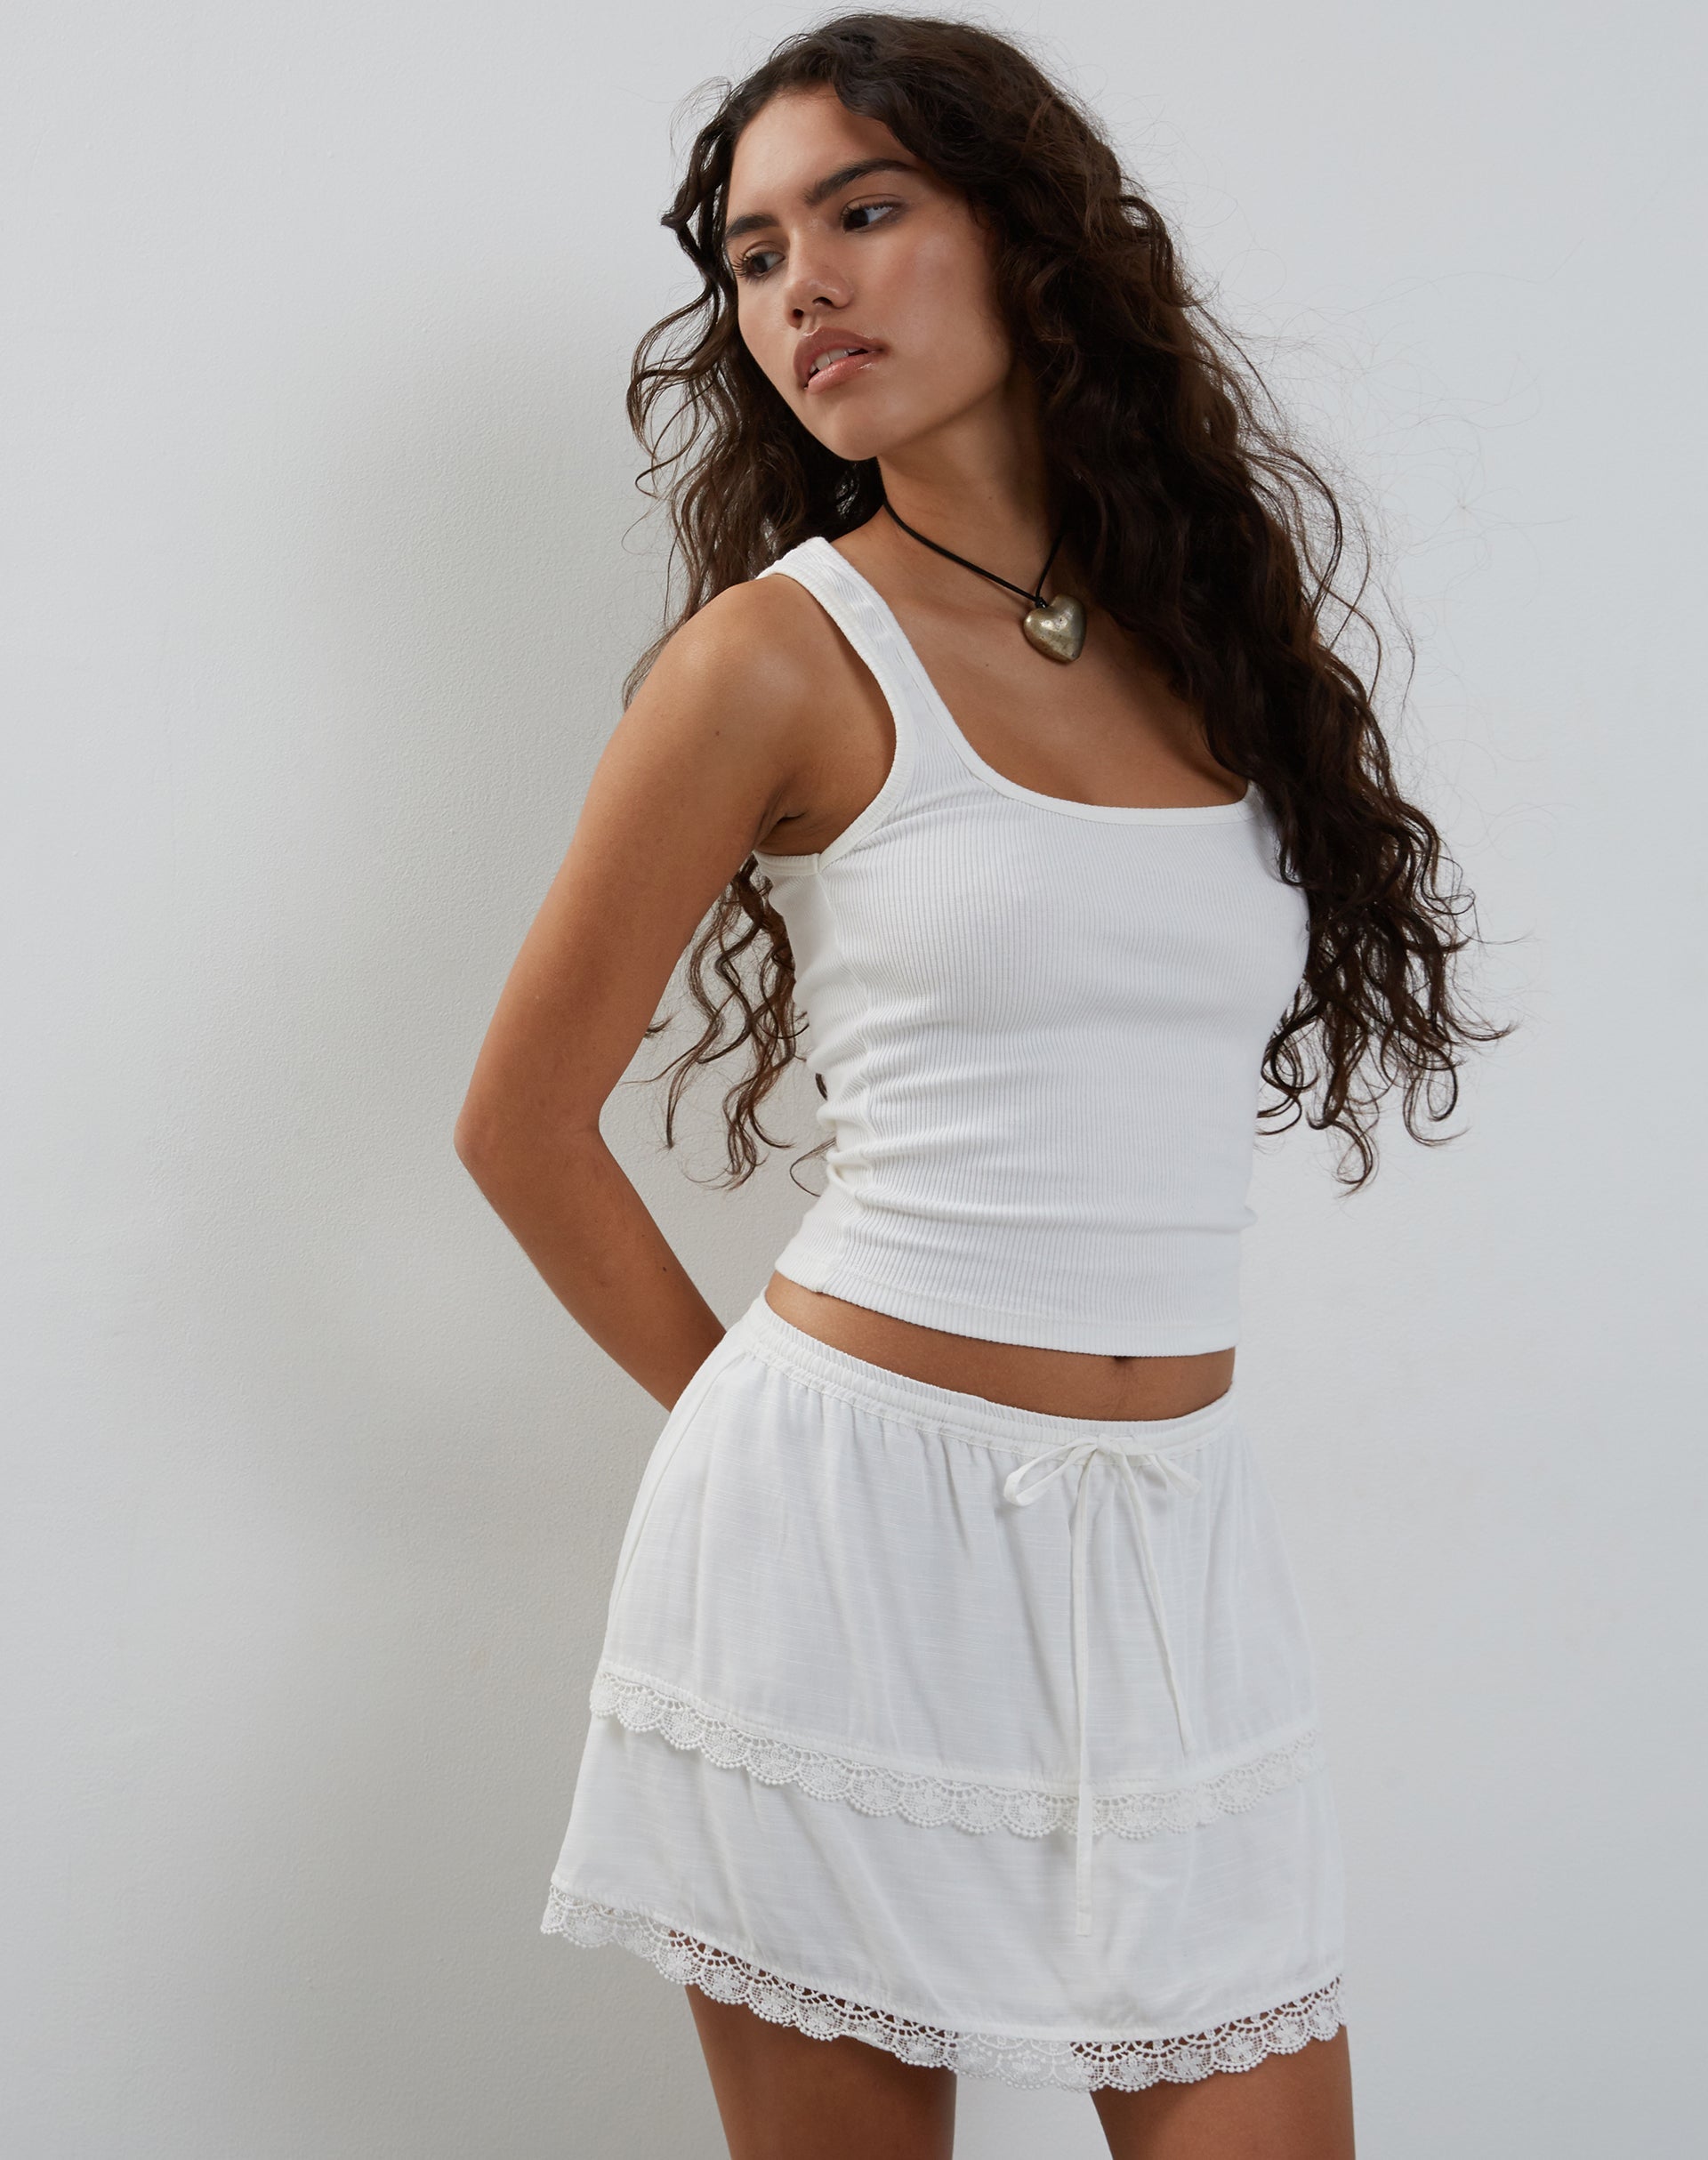 Imagen de Ryila Minifalda con volantes en blanco